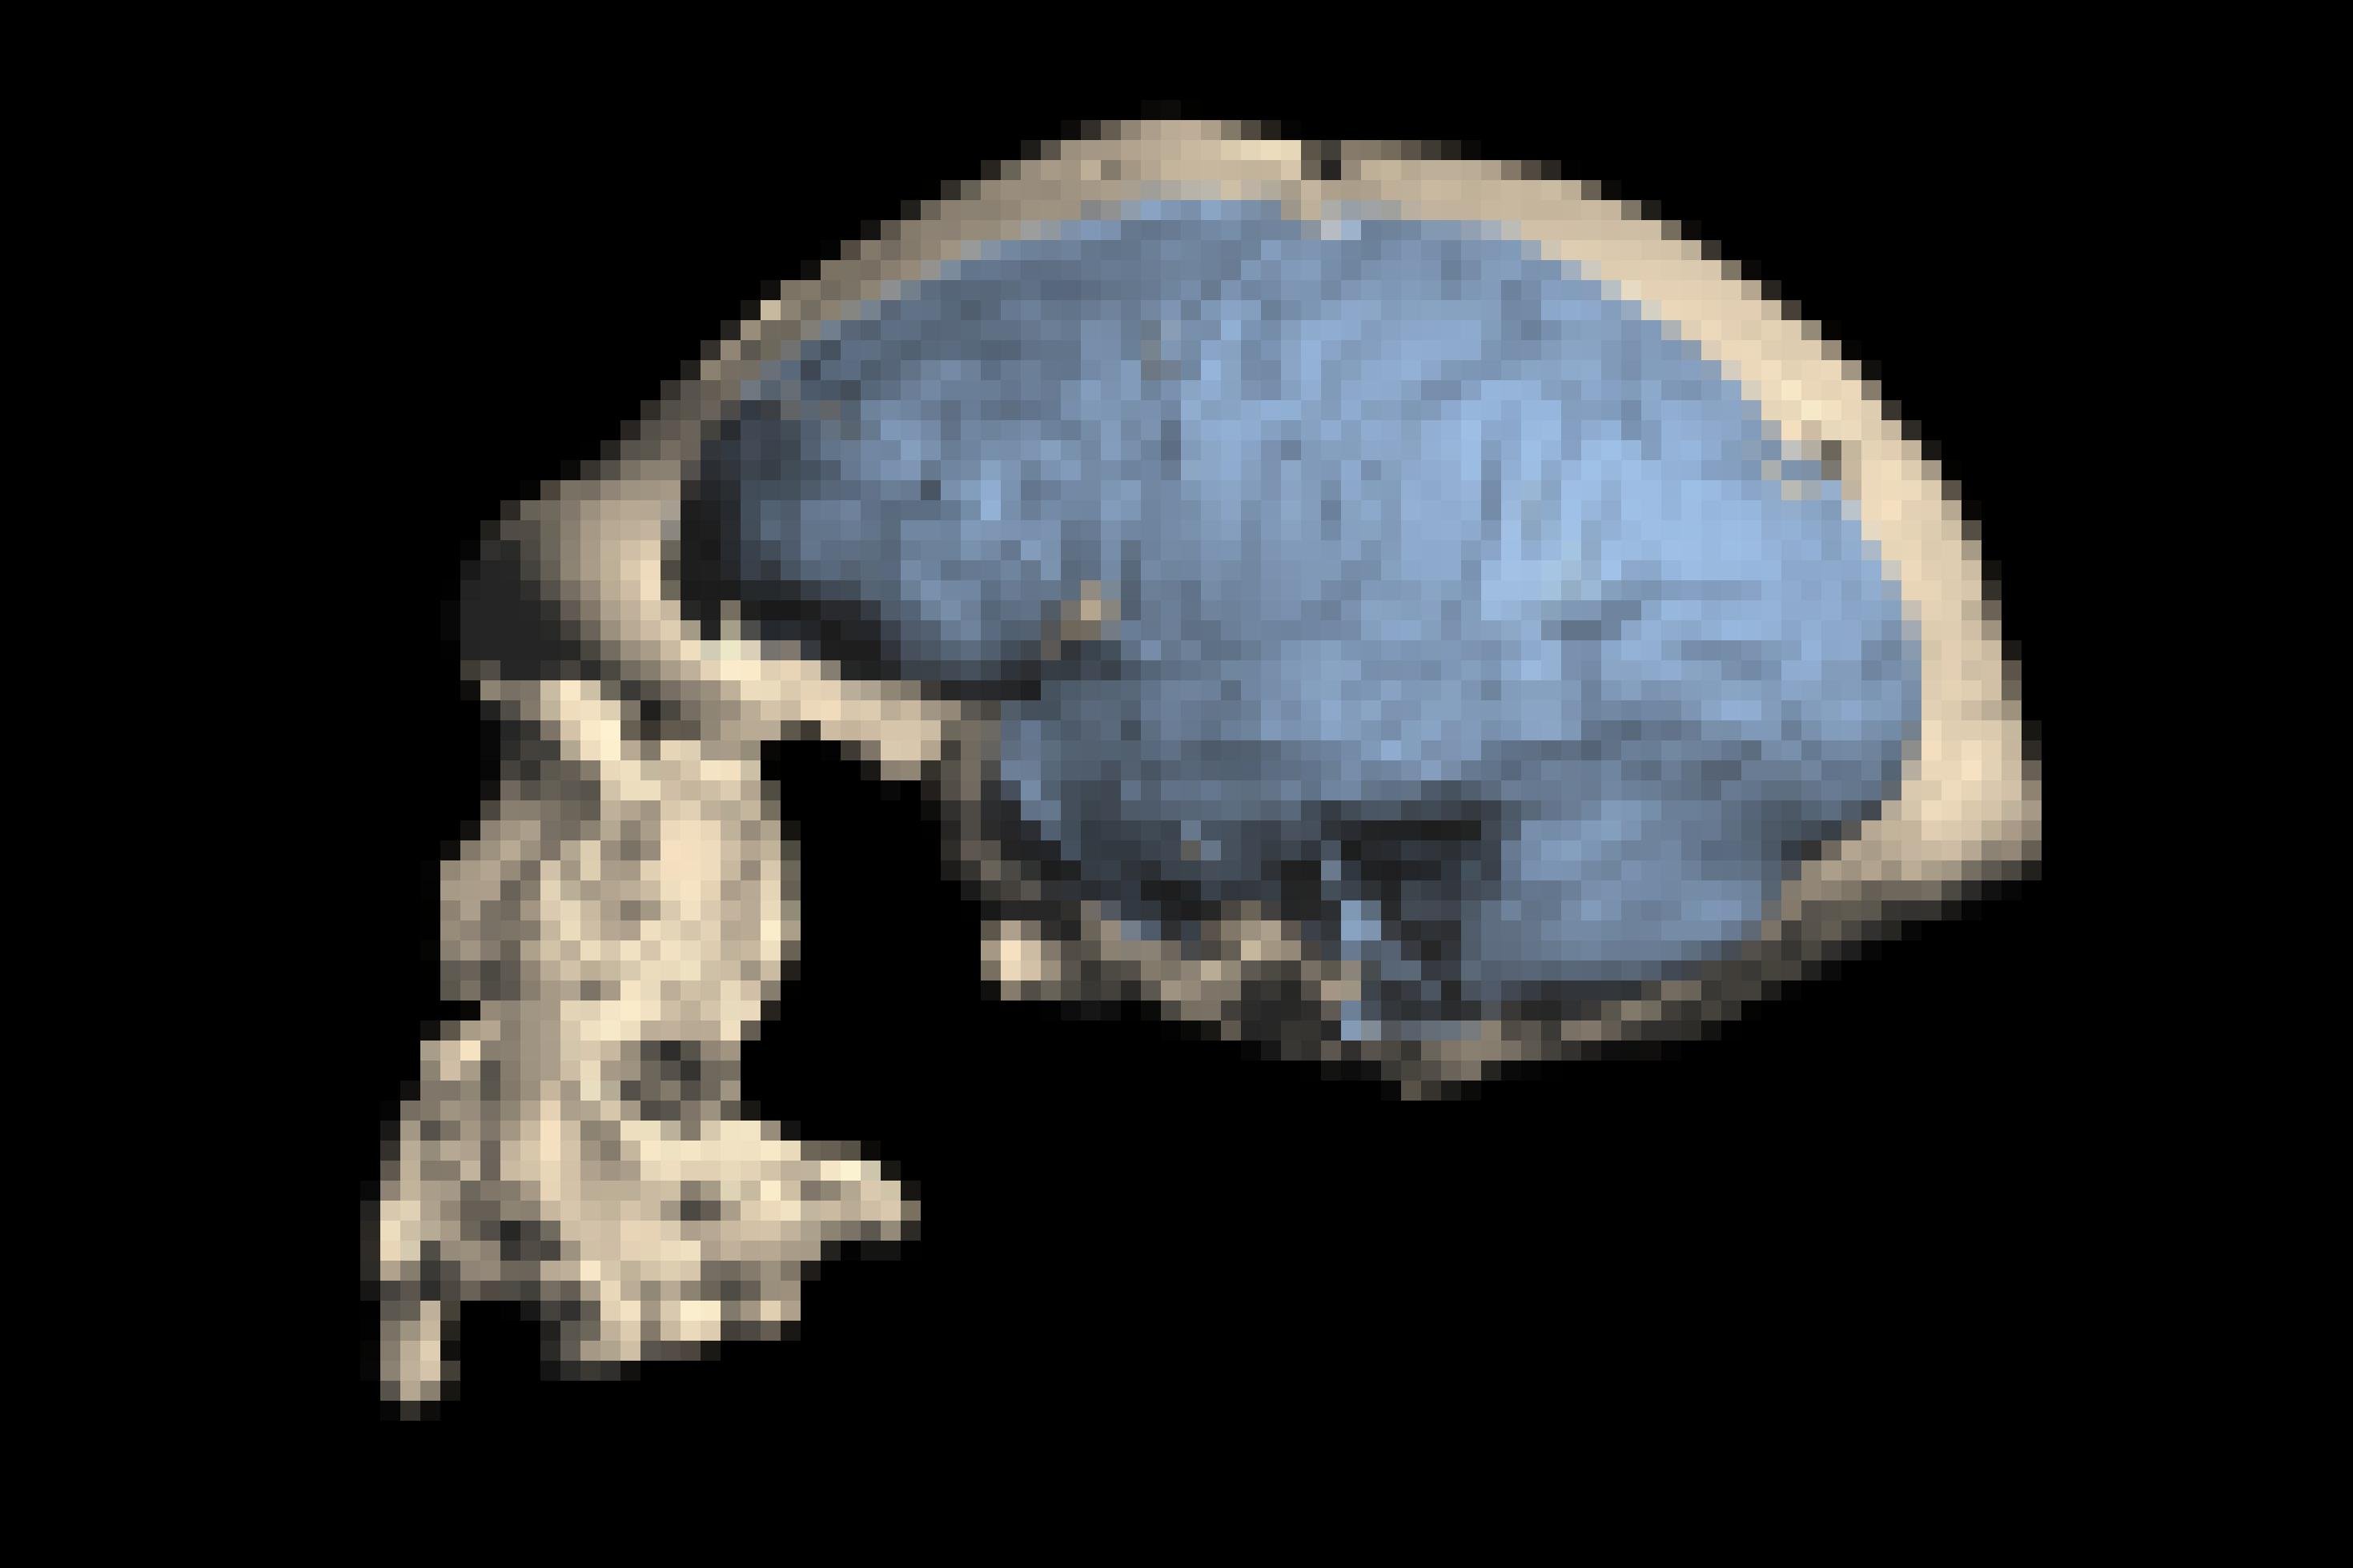 Das Foto zeigt vor schwarzem Hintergrund einen hellen Urmenschen-Schädel von der Seite, dessen Gesicht nach links weist. Blau in die Schädelkapsel eingezeichnet sind die Hirnstrukturen.